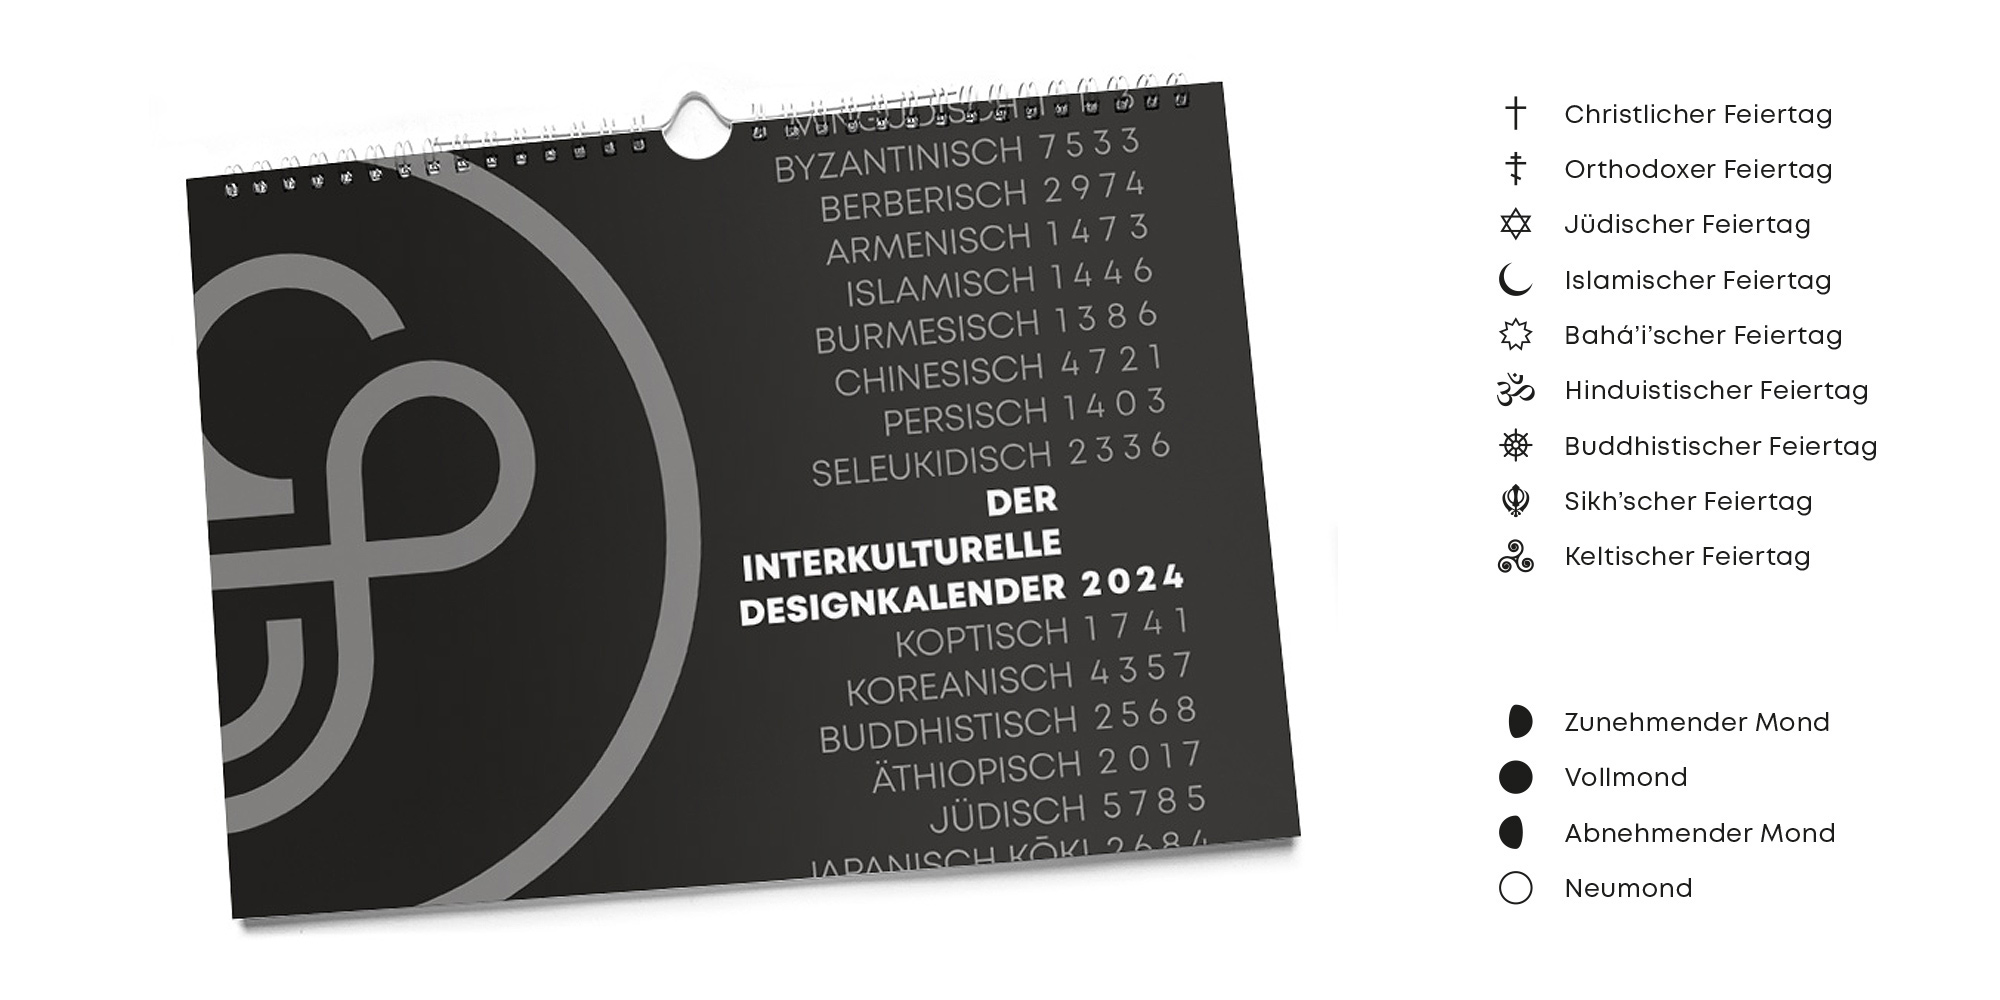 Der interkulturelle Designkalender 2024 // Grafikdesign München